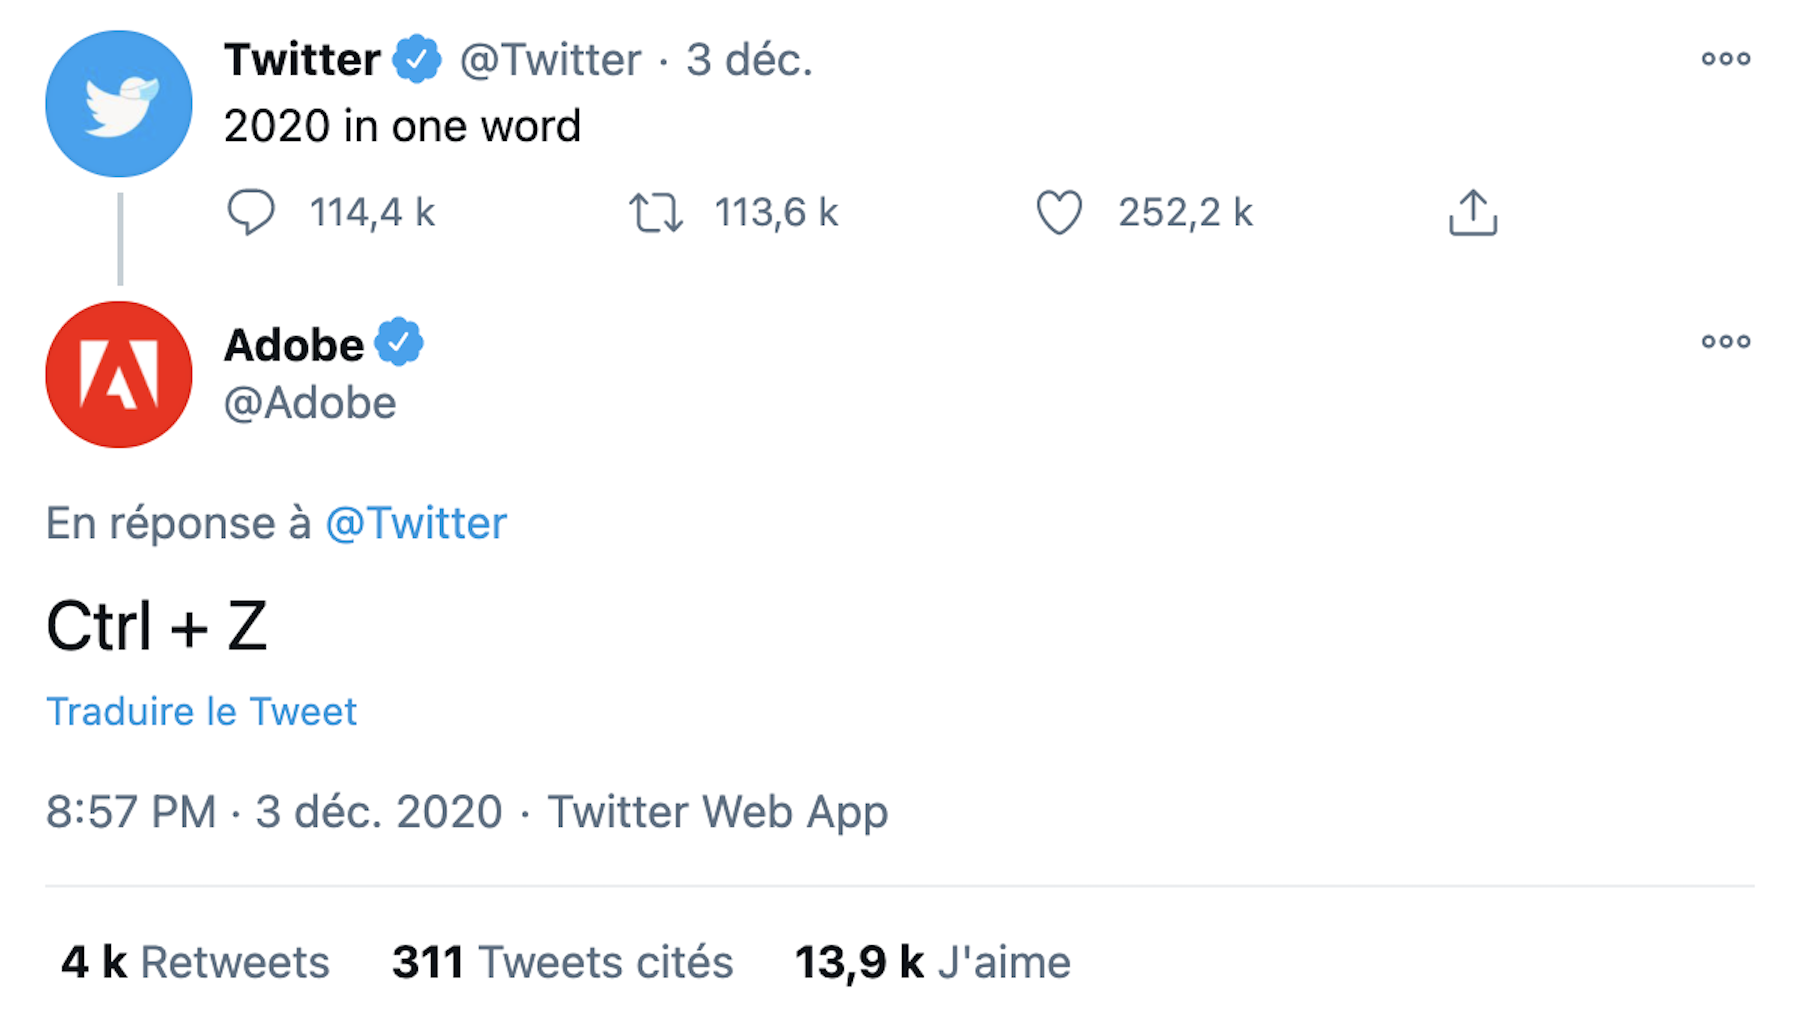 Twitter demande de résumer 2020 en un mot : les marques répondent avec humour